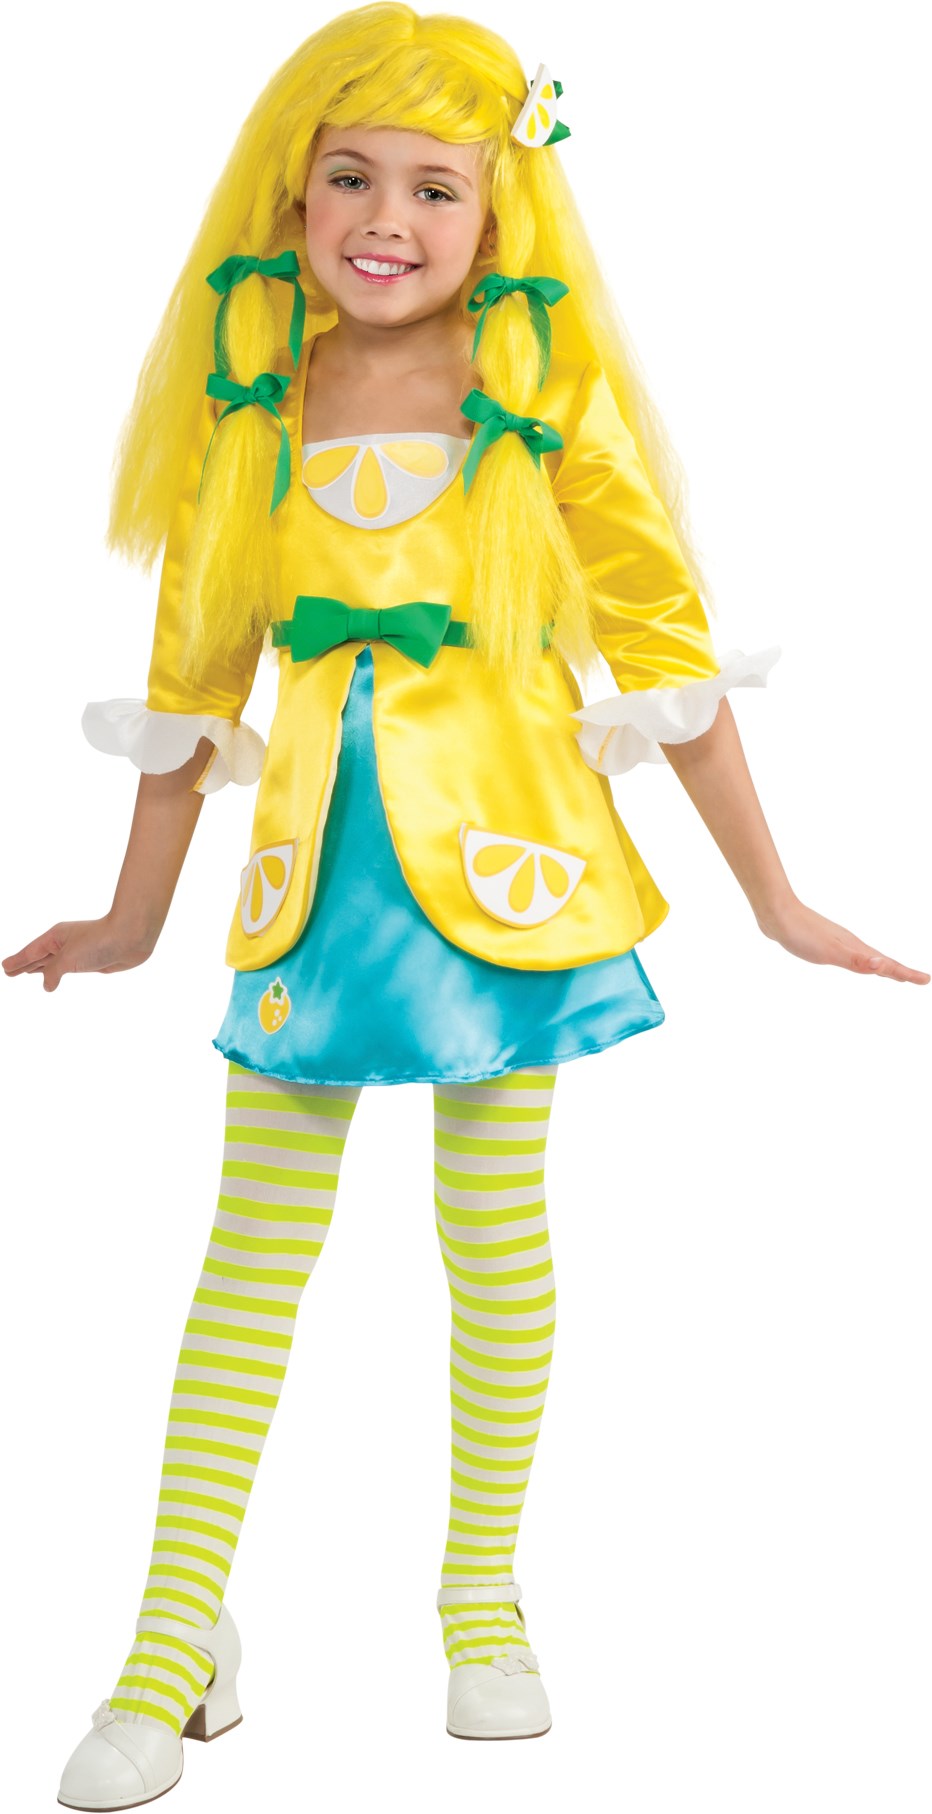 Strawberry Shortcake - Lemon Meringue Deluxe Toddler / Child Costume